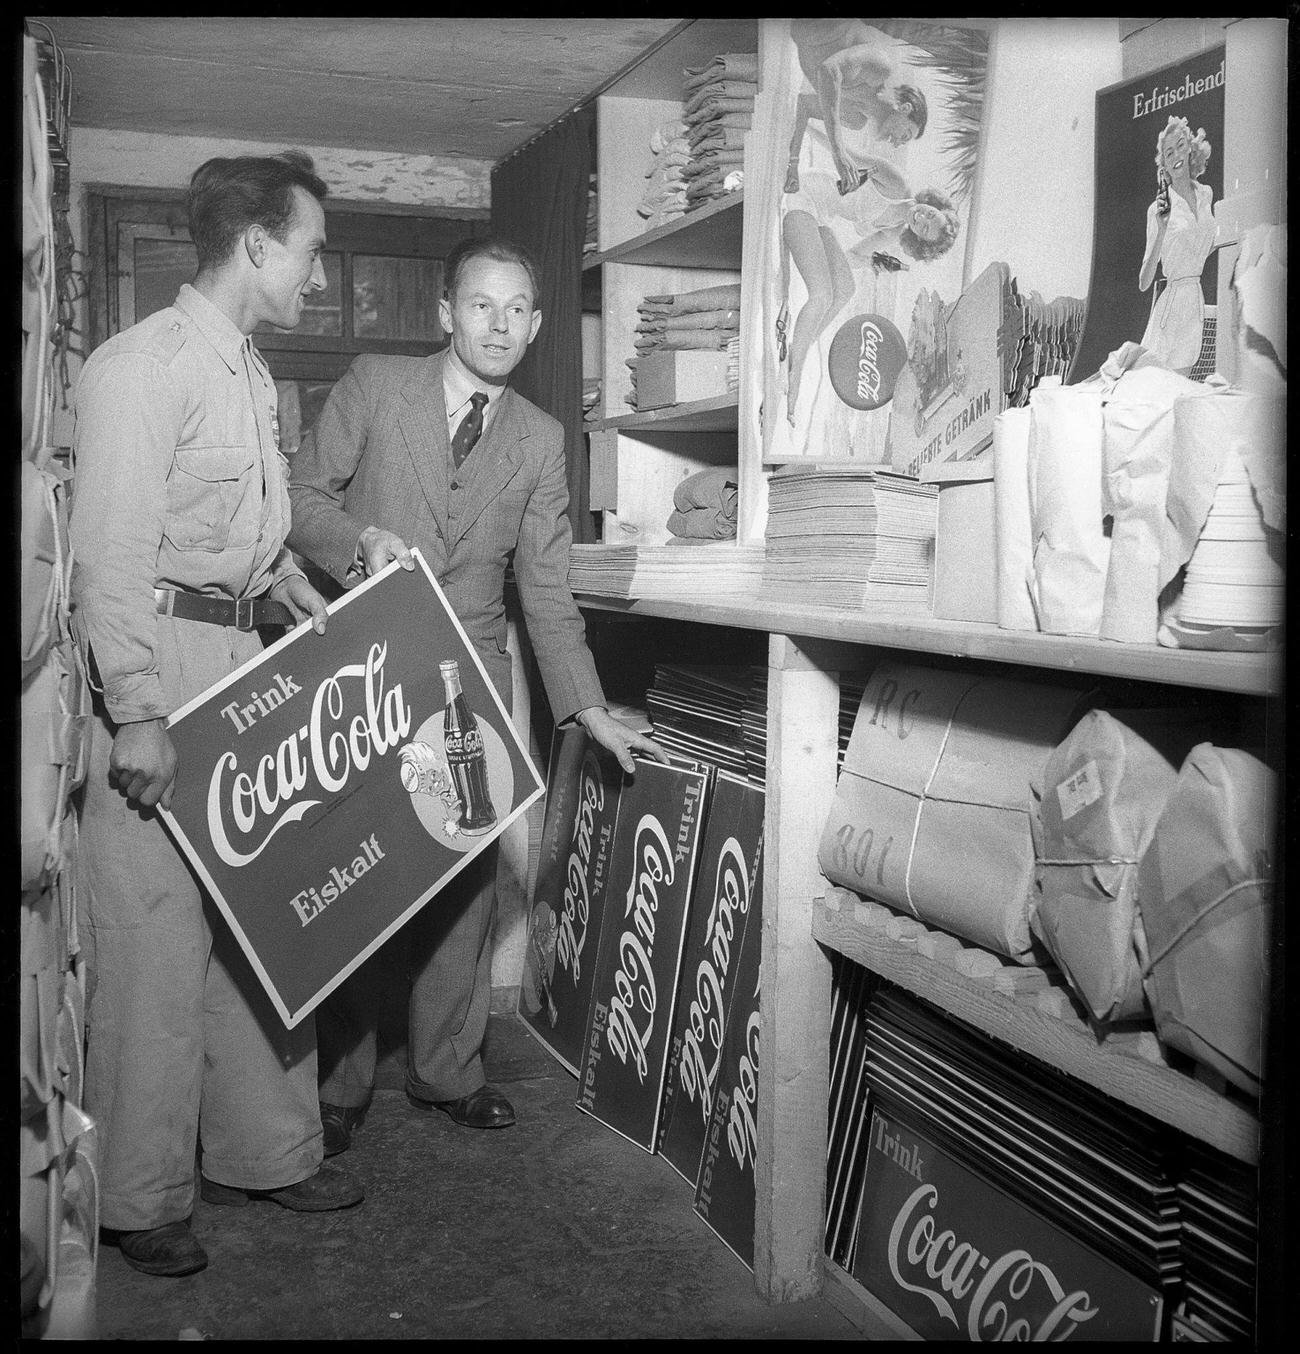 Coca-Cola promotional materials, 1949.